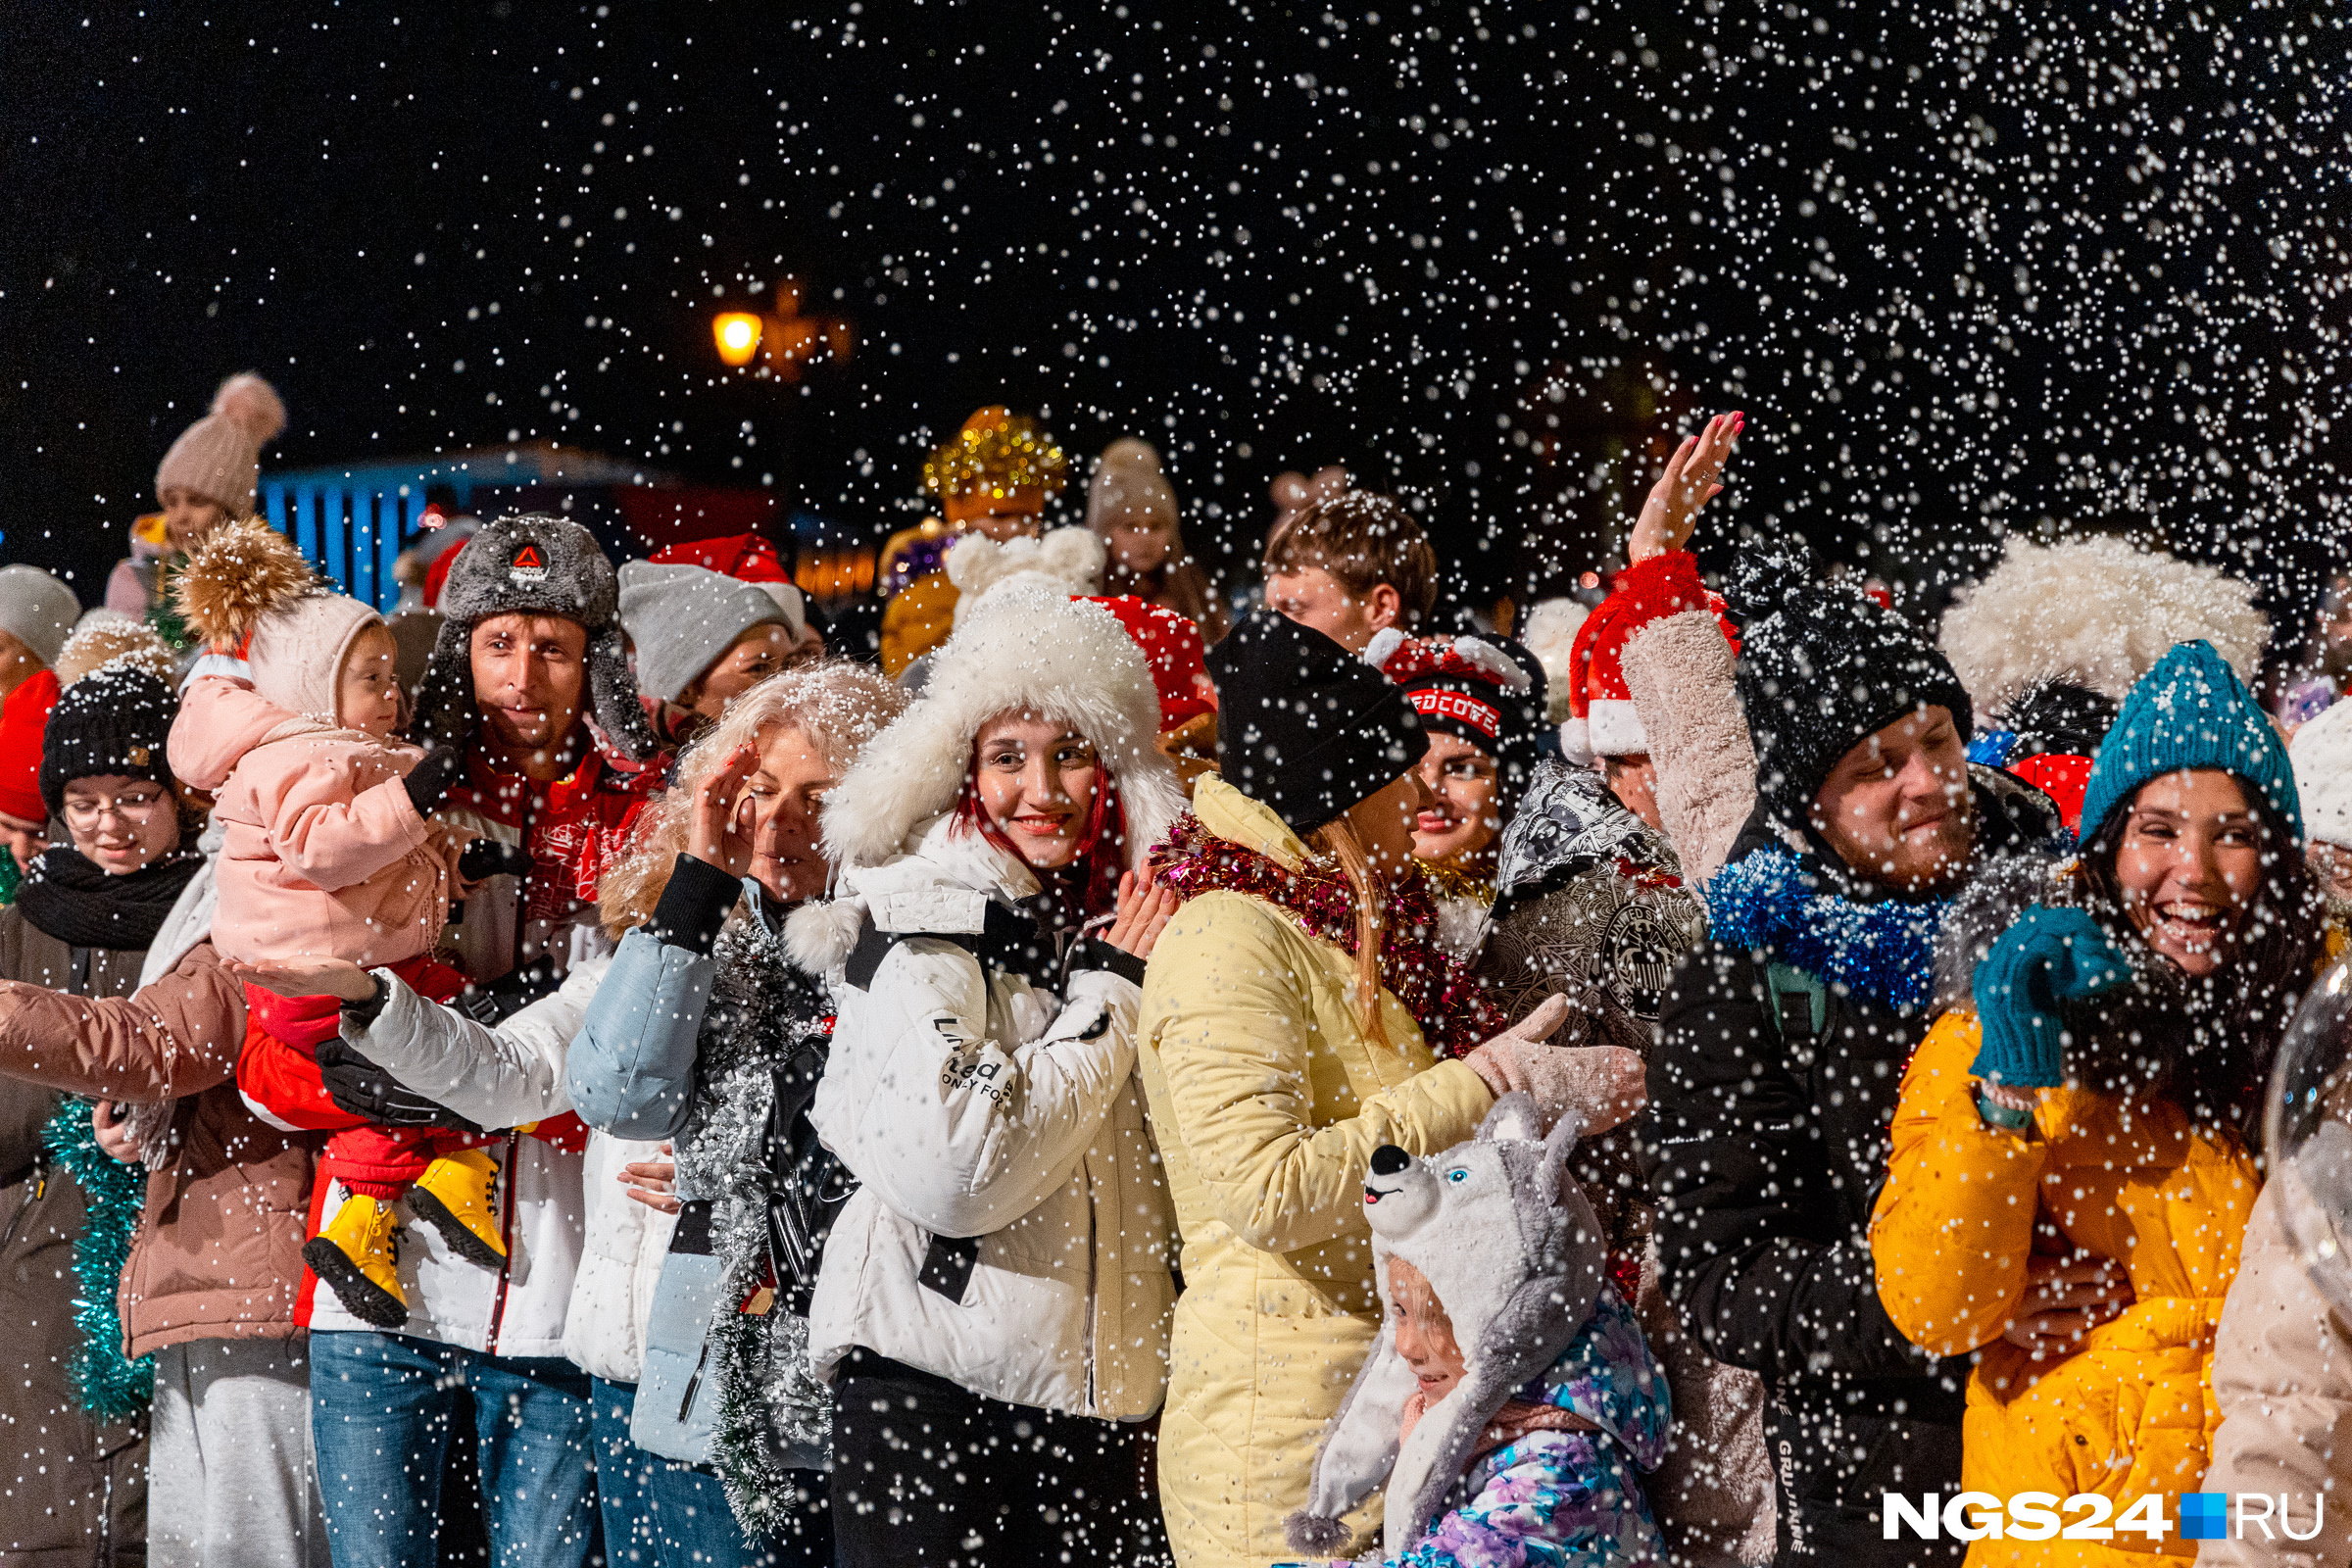 Вам, как и нам, тоже захотелось окунуться в атмосферу Нового года, глядя на фото?